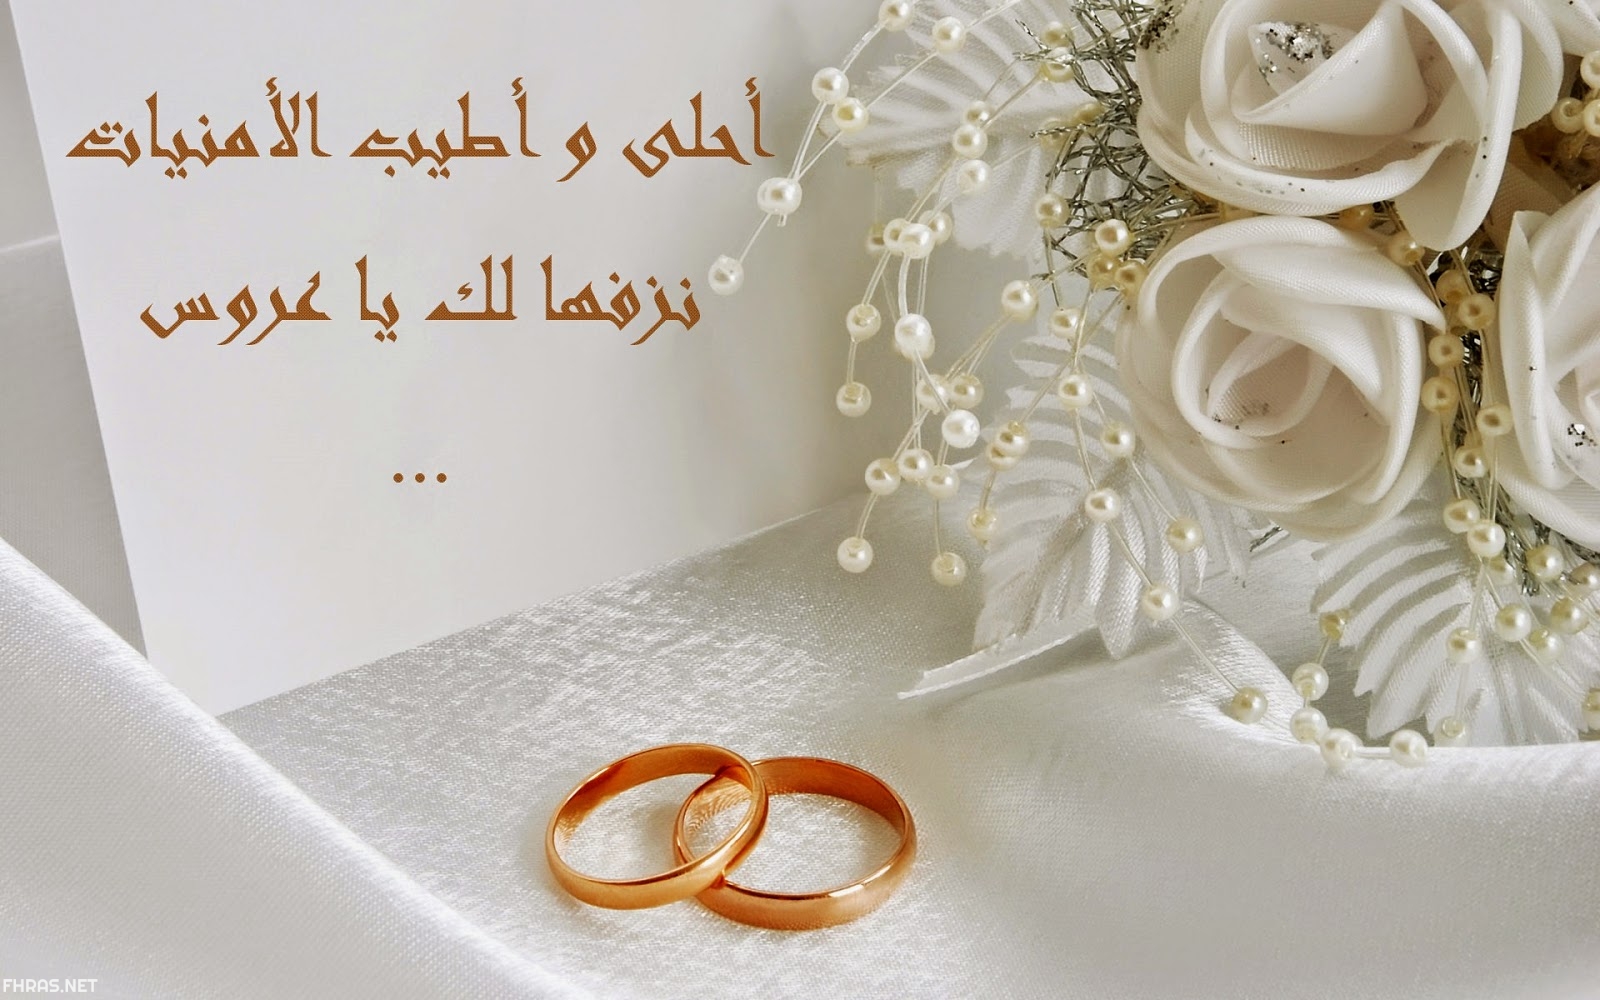 بطاقات تهنئة بالزواج بالاسماء للعروسين